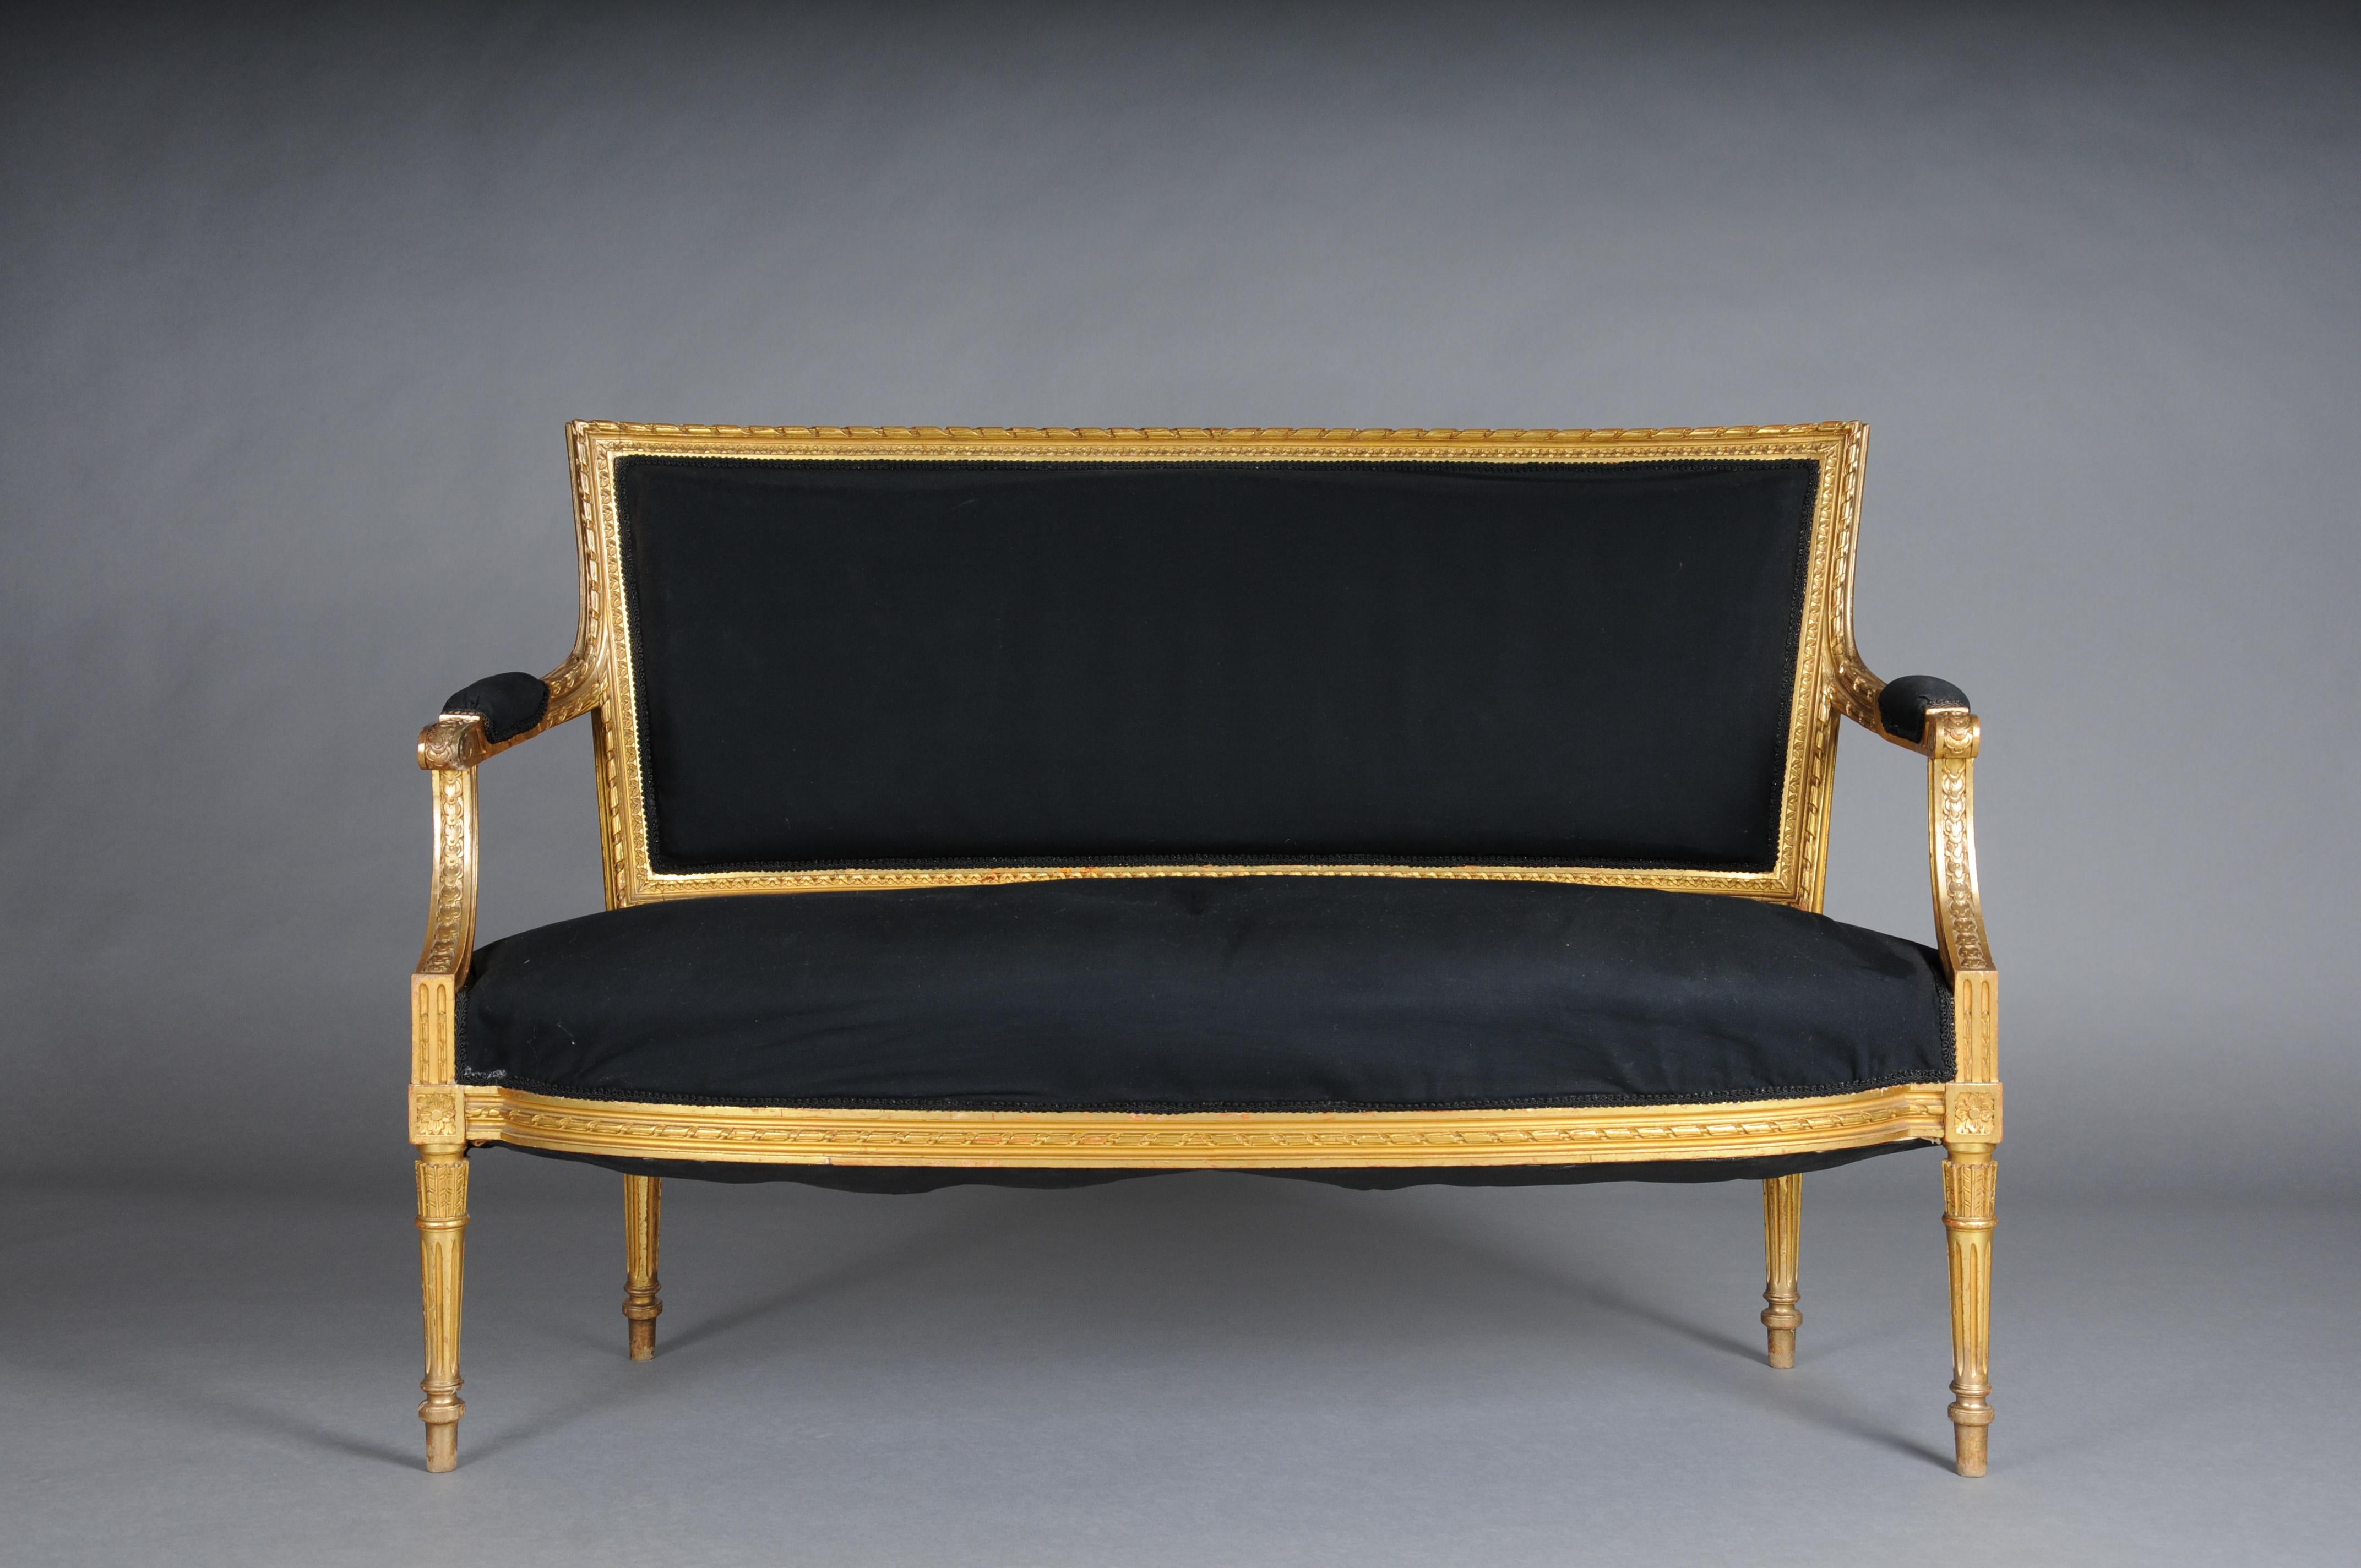 Antique canapé/fauteuil de salon français Louis XVI, or

Bois massif, finement sculpté et doré. Pieds cannelés et rainurés. L'assise et le dossier ainsi que les accoudoirs sont paddés et recouverts de tissu noir.

France 19e siècle